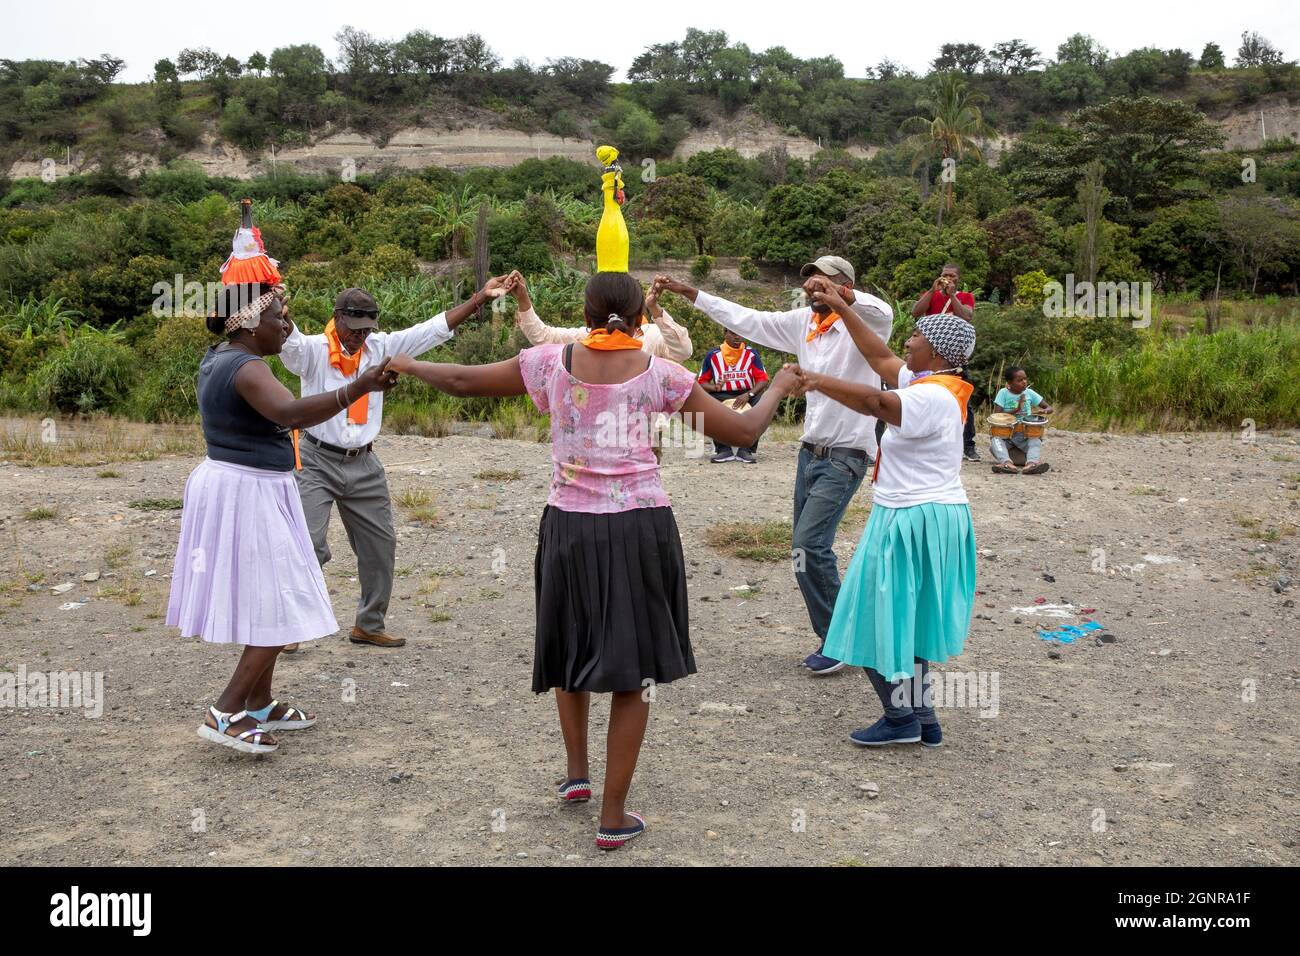 Afro-Ecuadorian group dancing in Valle del Chota, Ecuador Stock Photo